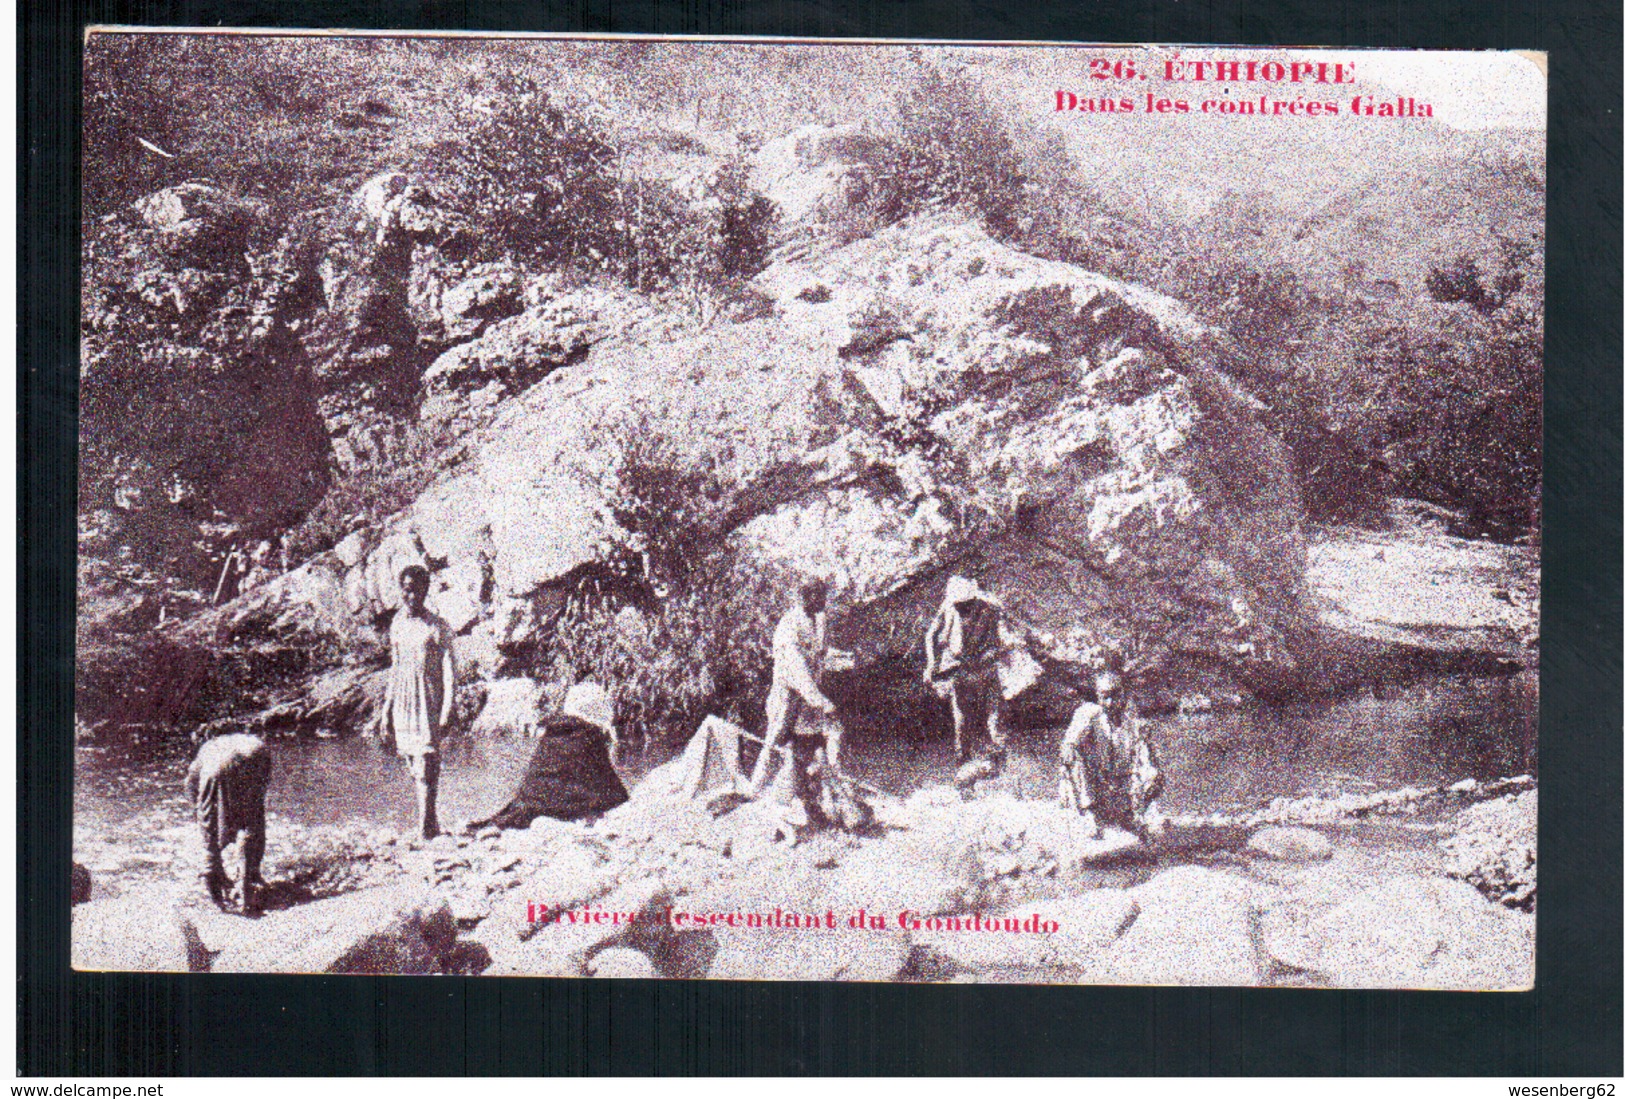 ETHIOPIE Dans Les Contrées Galla - Rivière Descendant Du Gondoudo Ca  1905 OLD  POSTCARD - Ethiopie